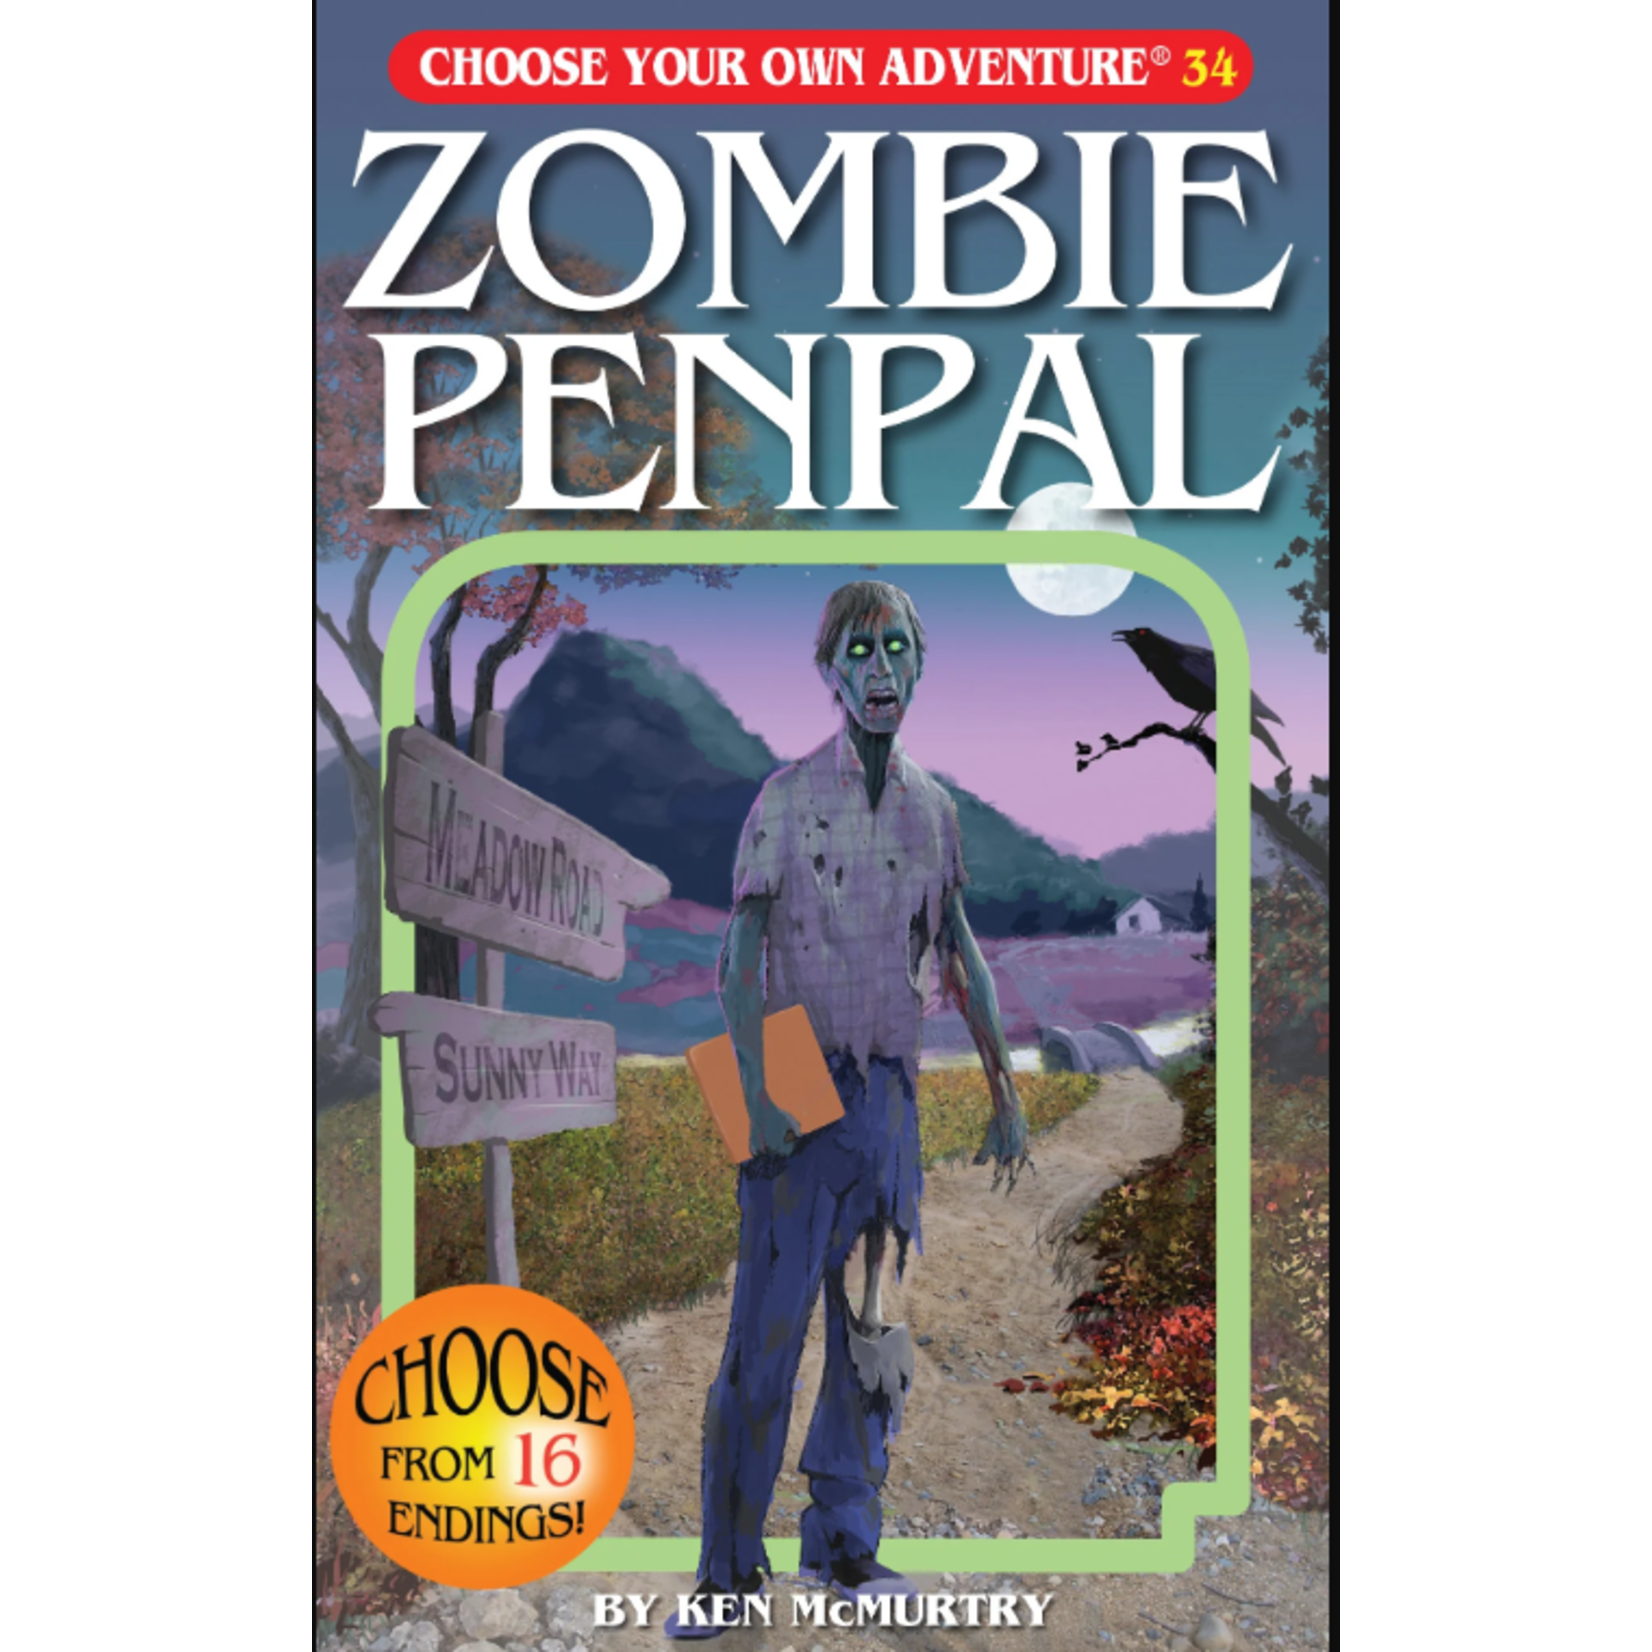 Choose Your Own Adventure Choose Your Own Adventure 34: Zombie Penpal - Ken McMurtry